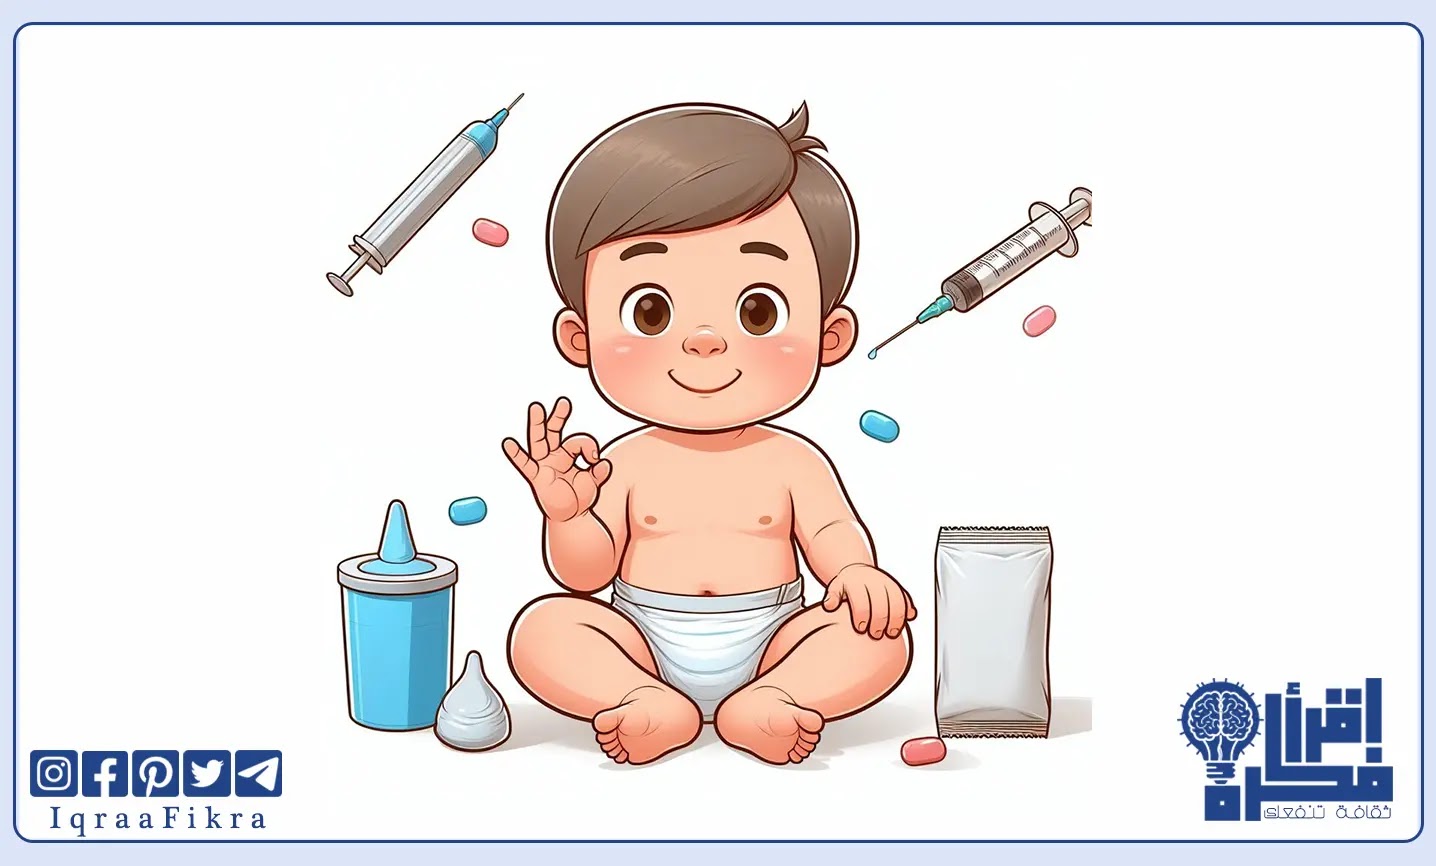 الطريقة الصحيحة لإعطاء الأدوية الشرجية للأطفال